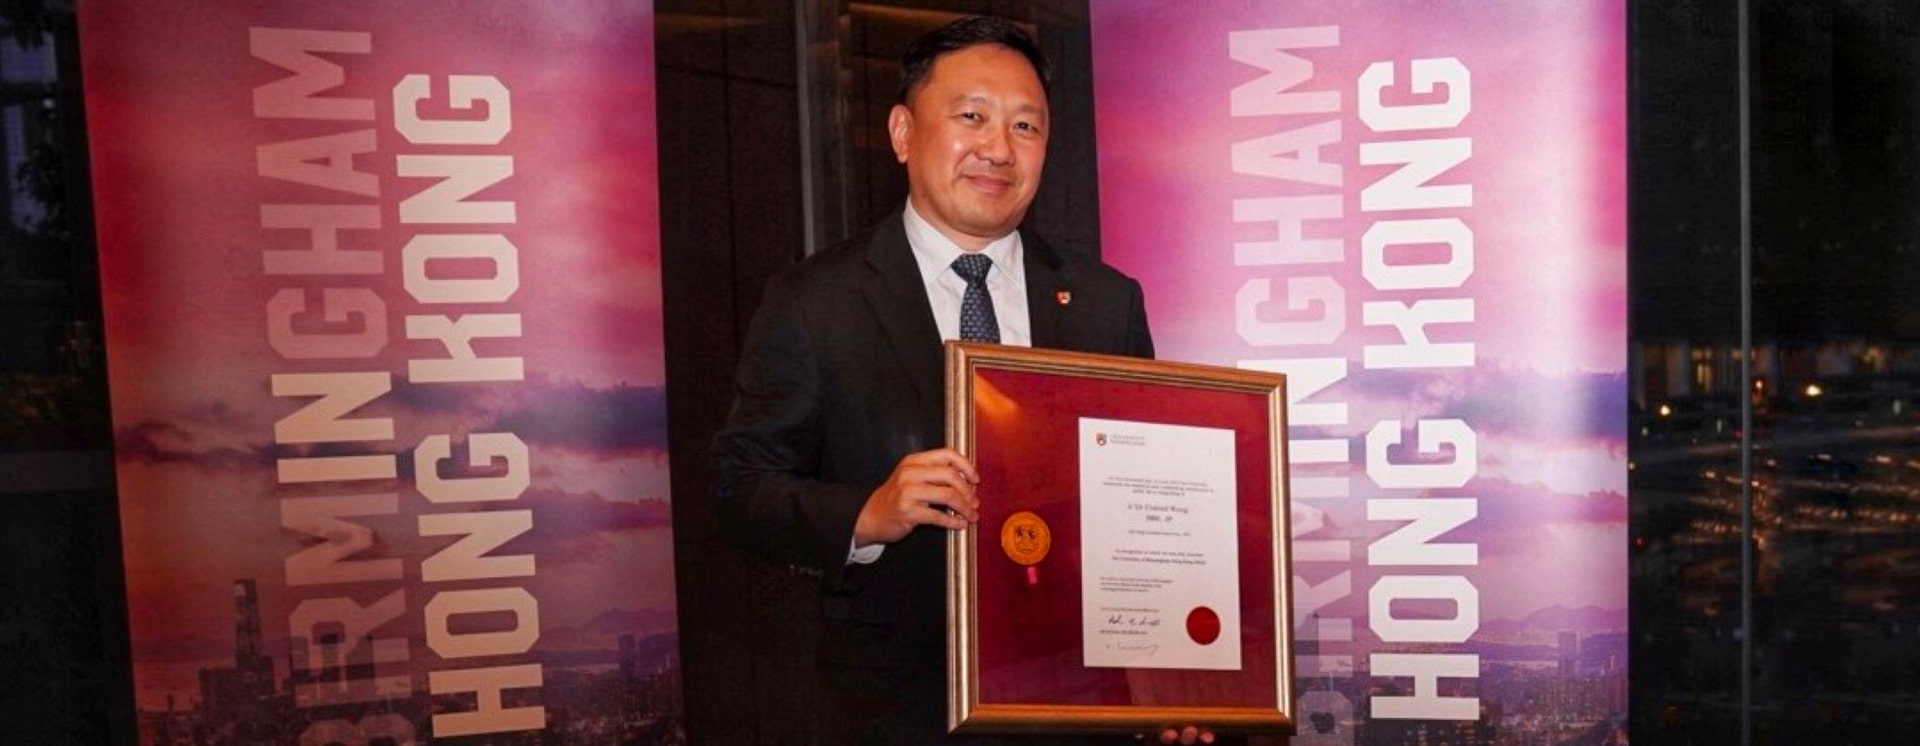 Dr Conrad Wong holding his framed Hong Kong medal